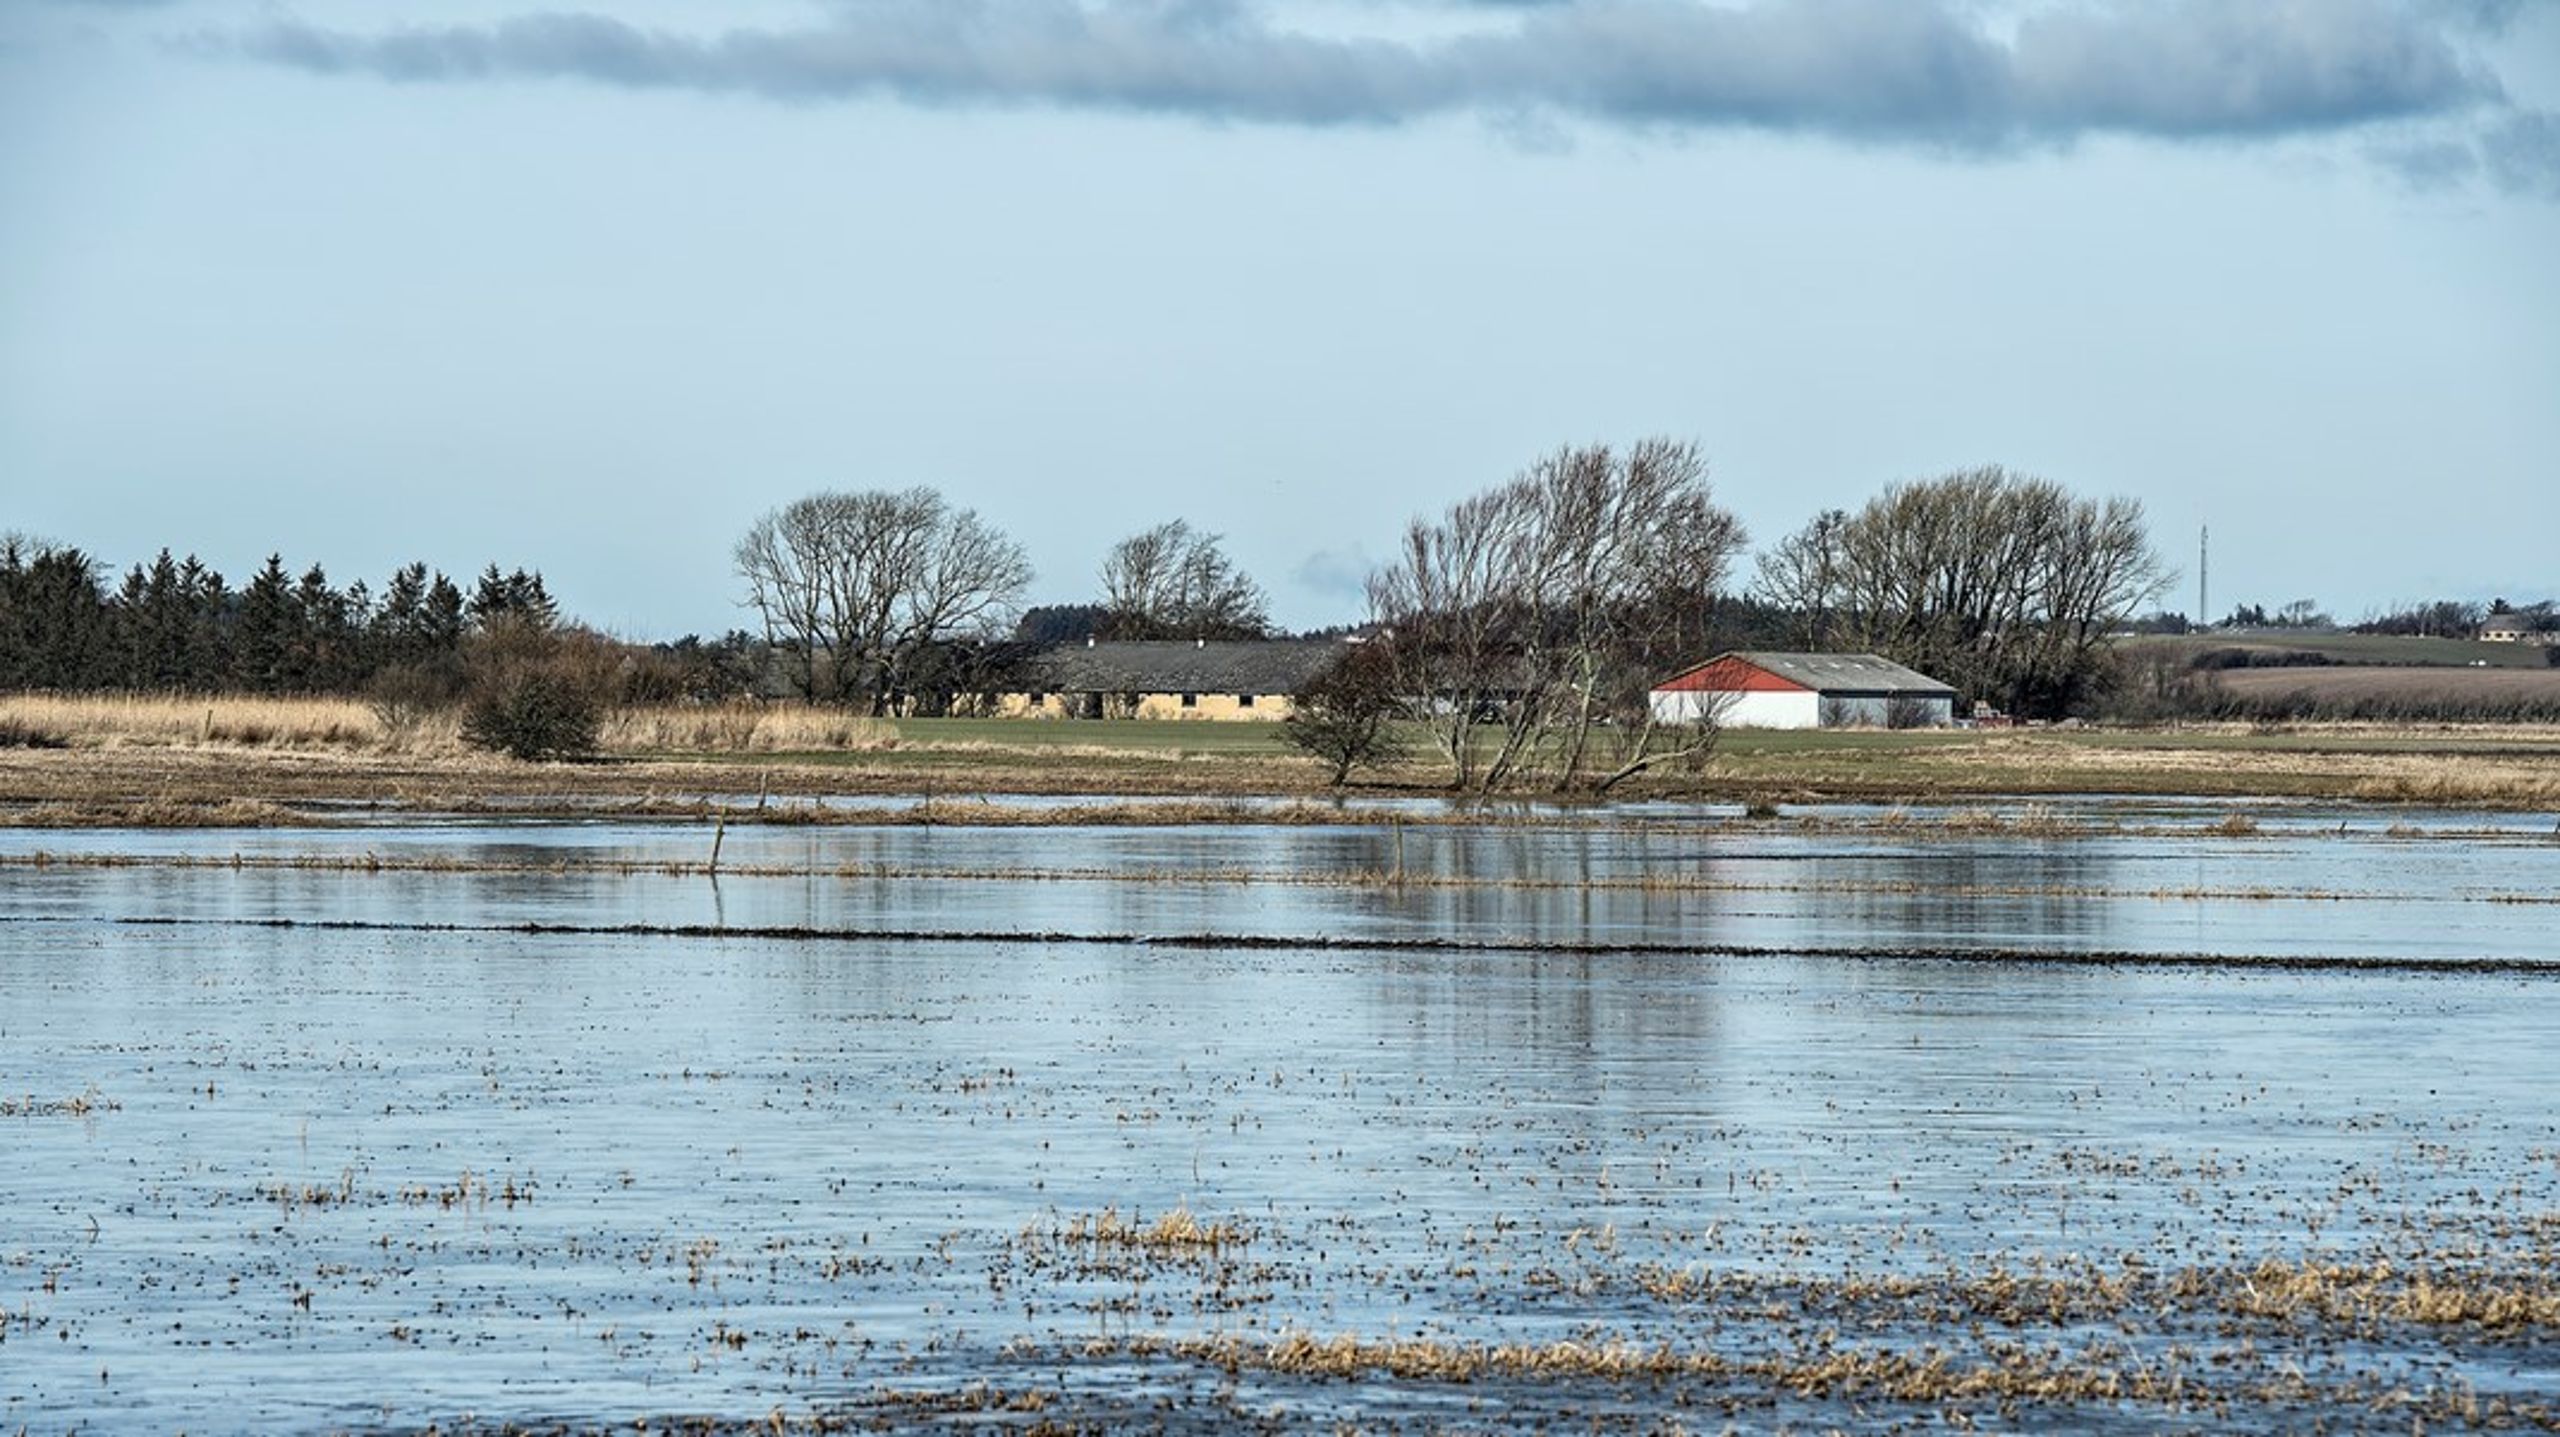 Danmark har et blindt punkt for miljøfarlige stoffer i vandmiljøet, skriver Mette Boye.